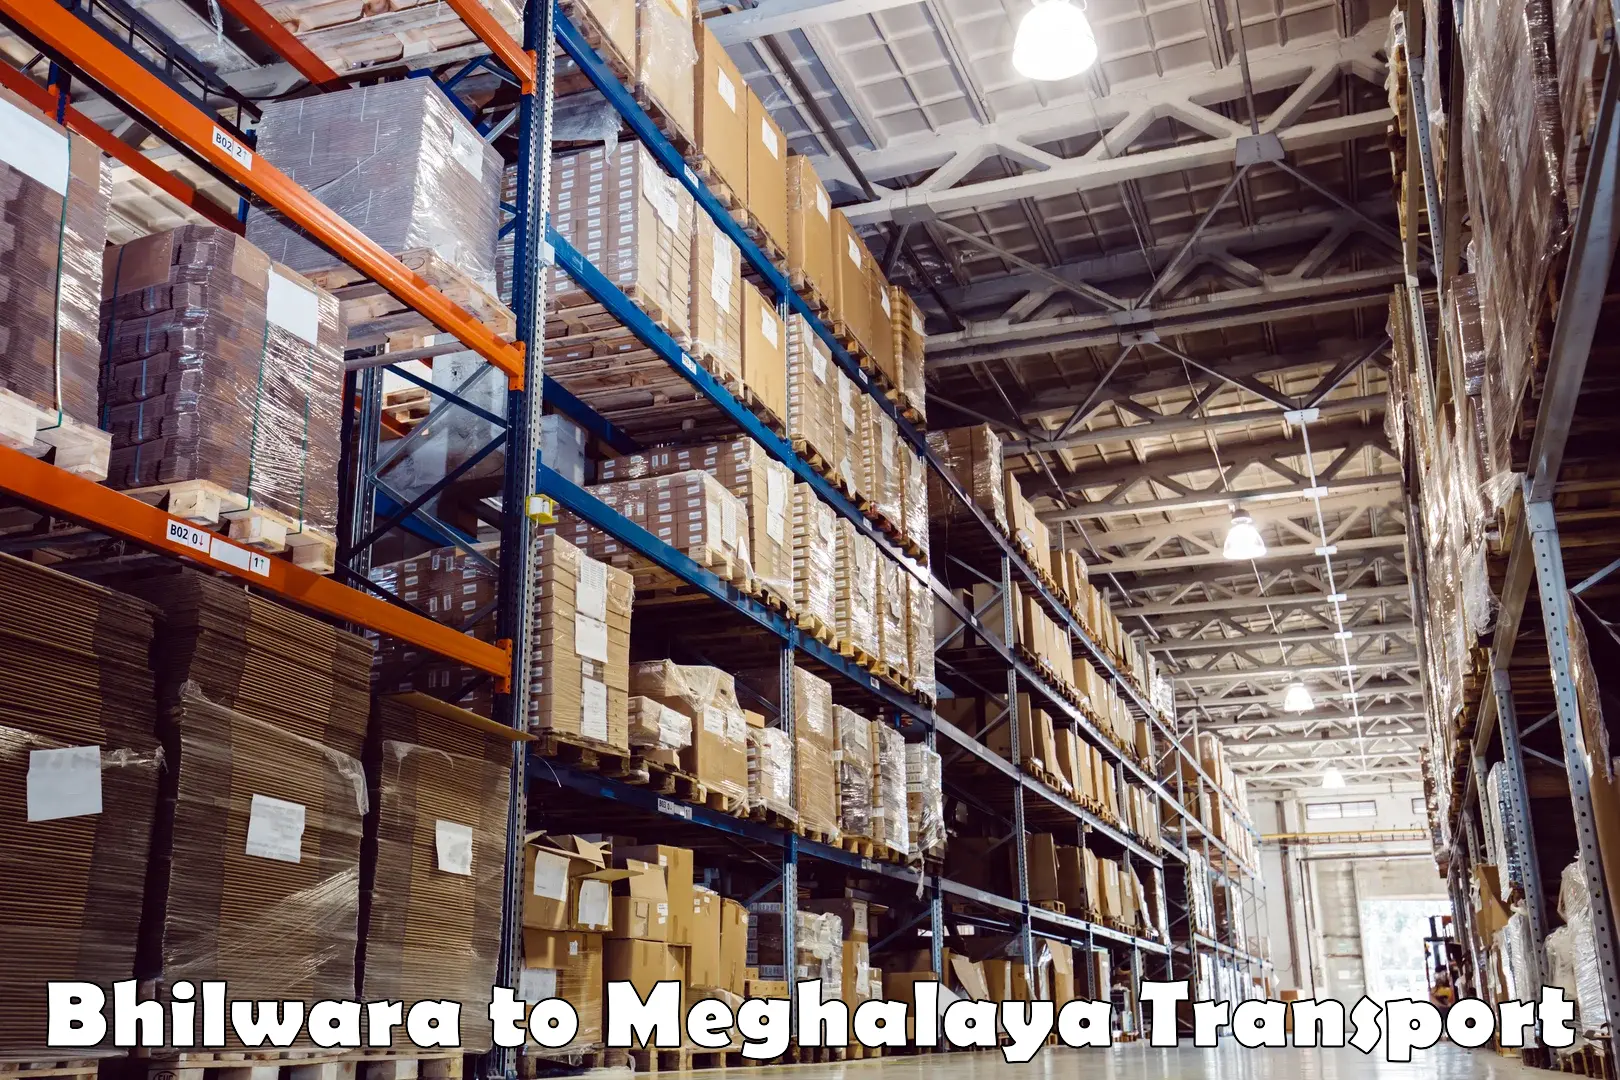 Shipping partner Bhilwara to Meghalaya